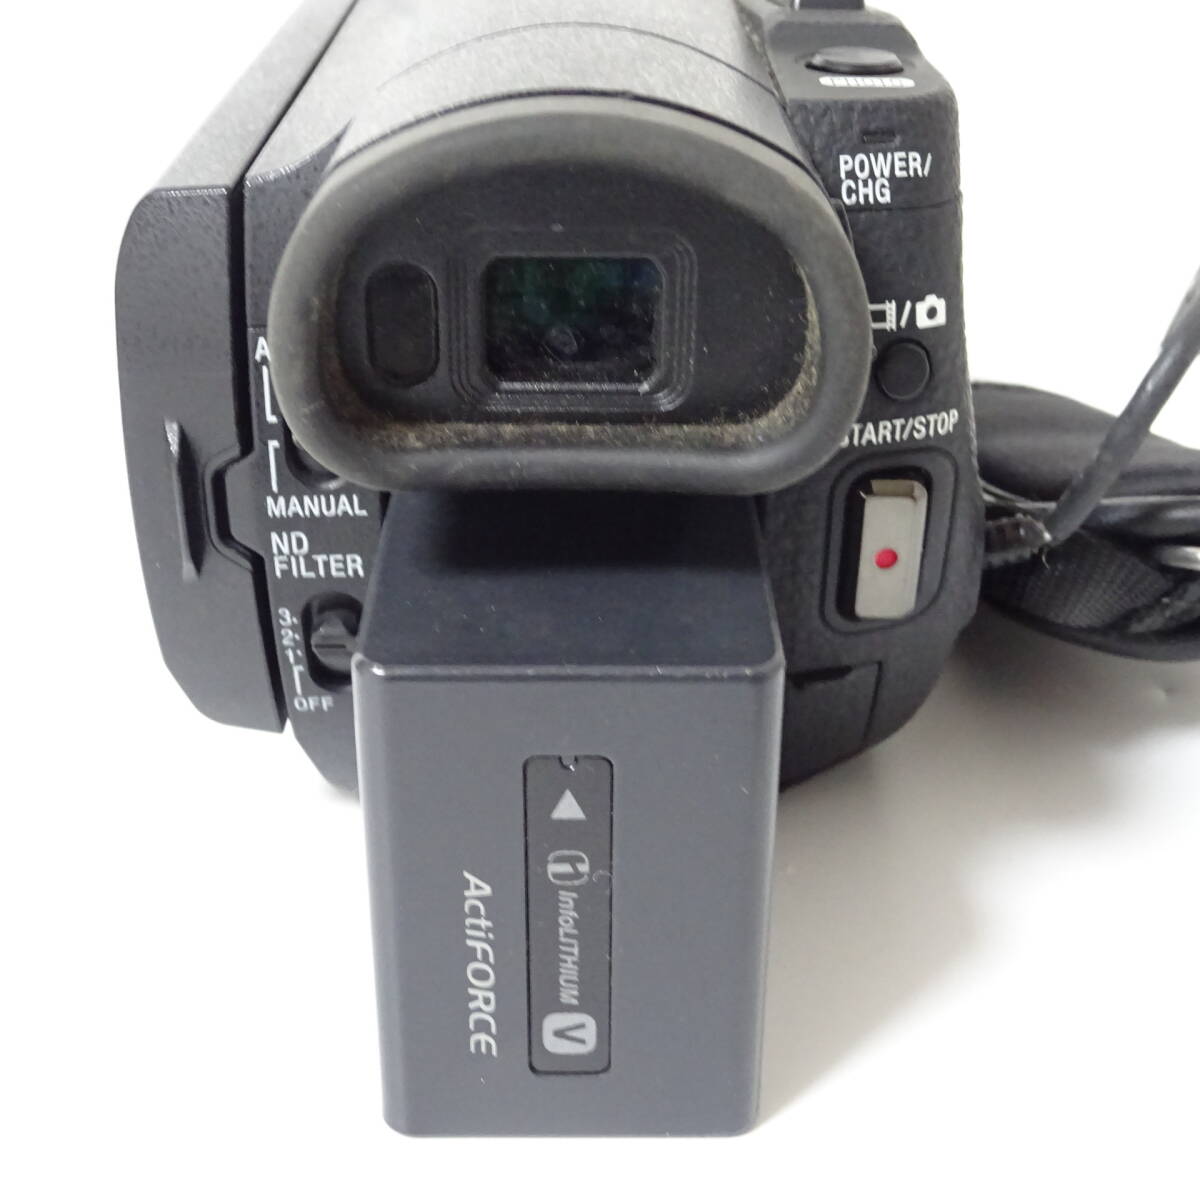 ソニー Handycam HDR-CX900 デジタルビデオカメラ他 14年製 SONY 通電確認済 使用感有 60サイズ発送 KK-2640470-302-mrrz_画像6